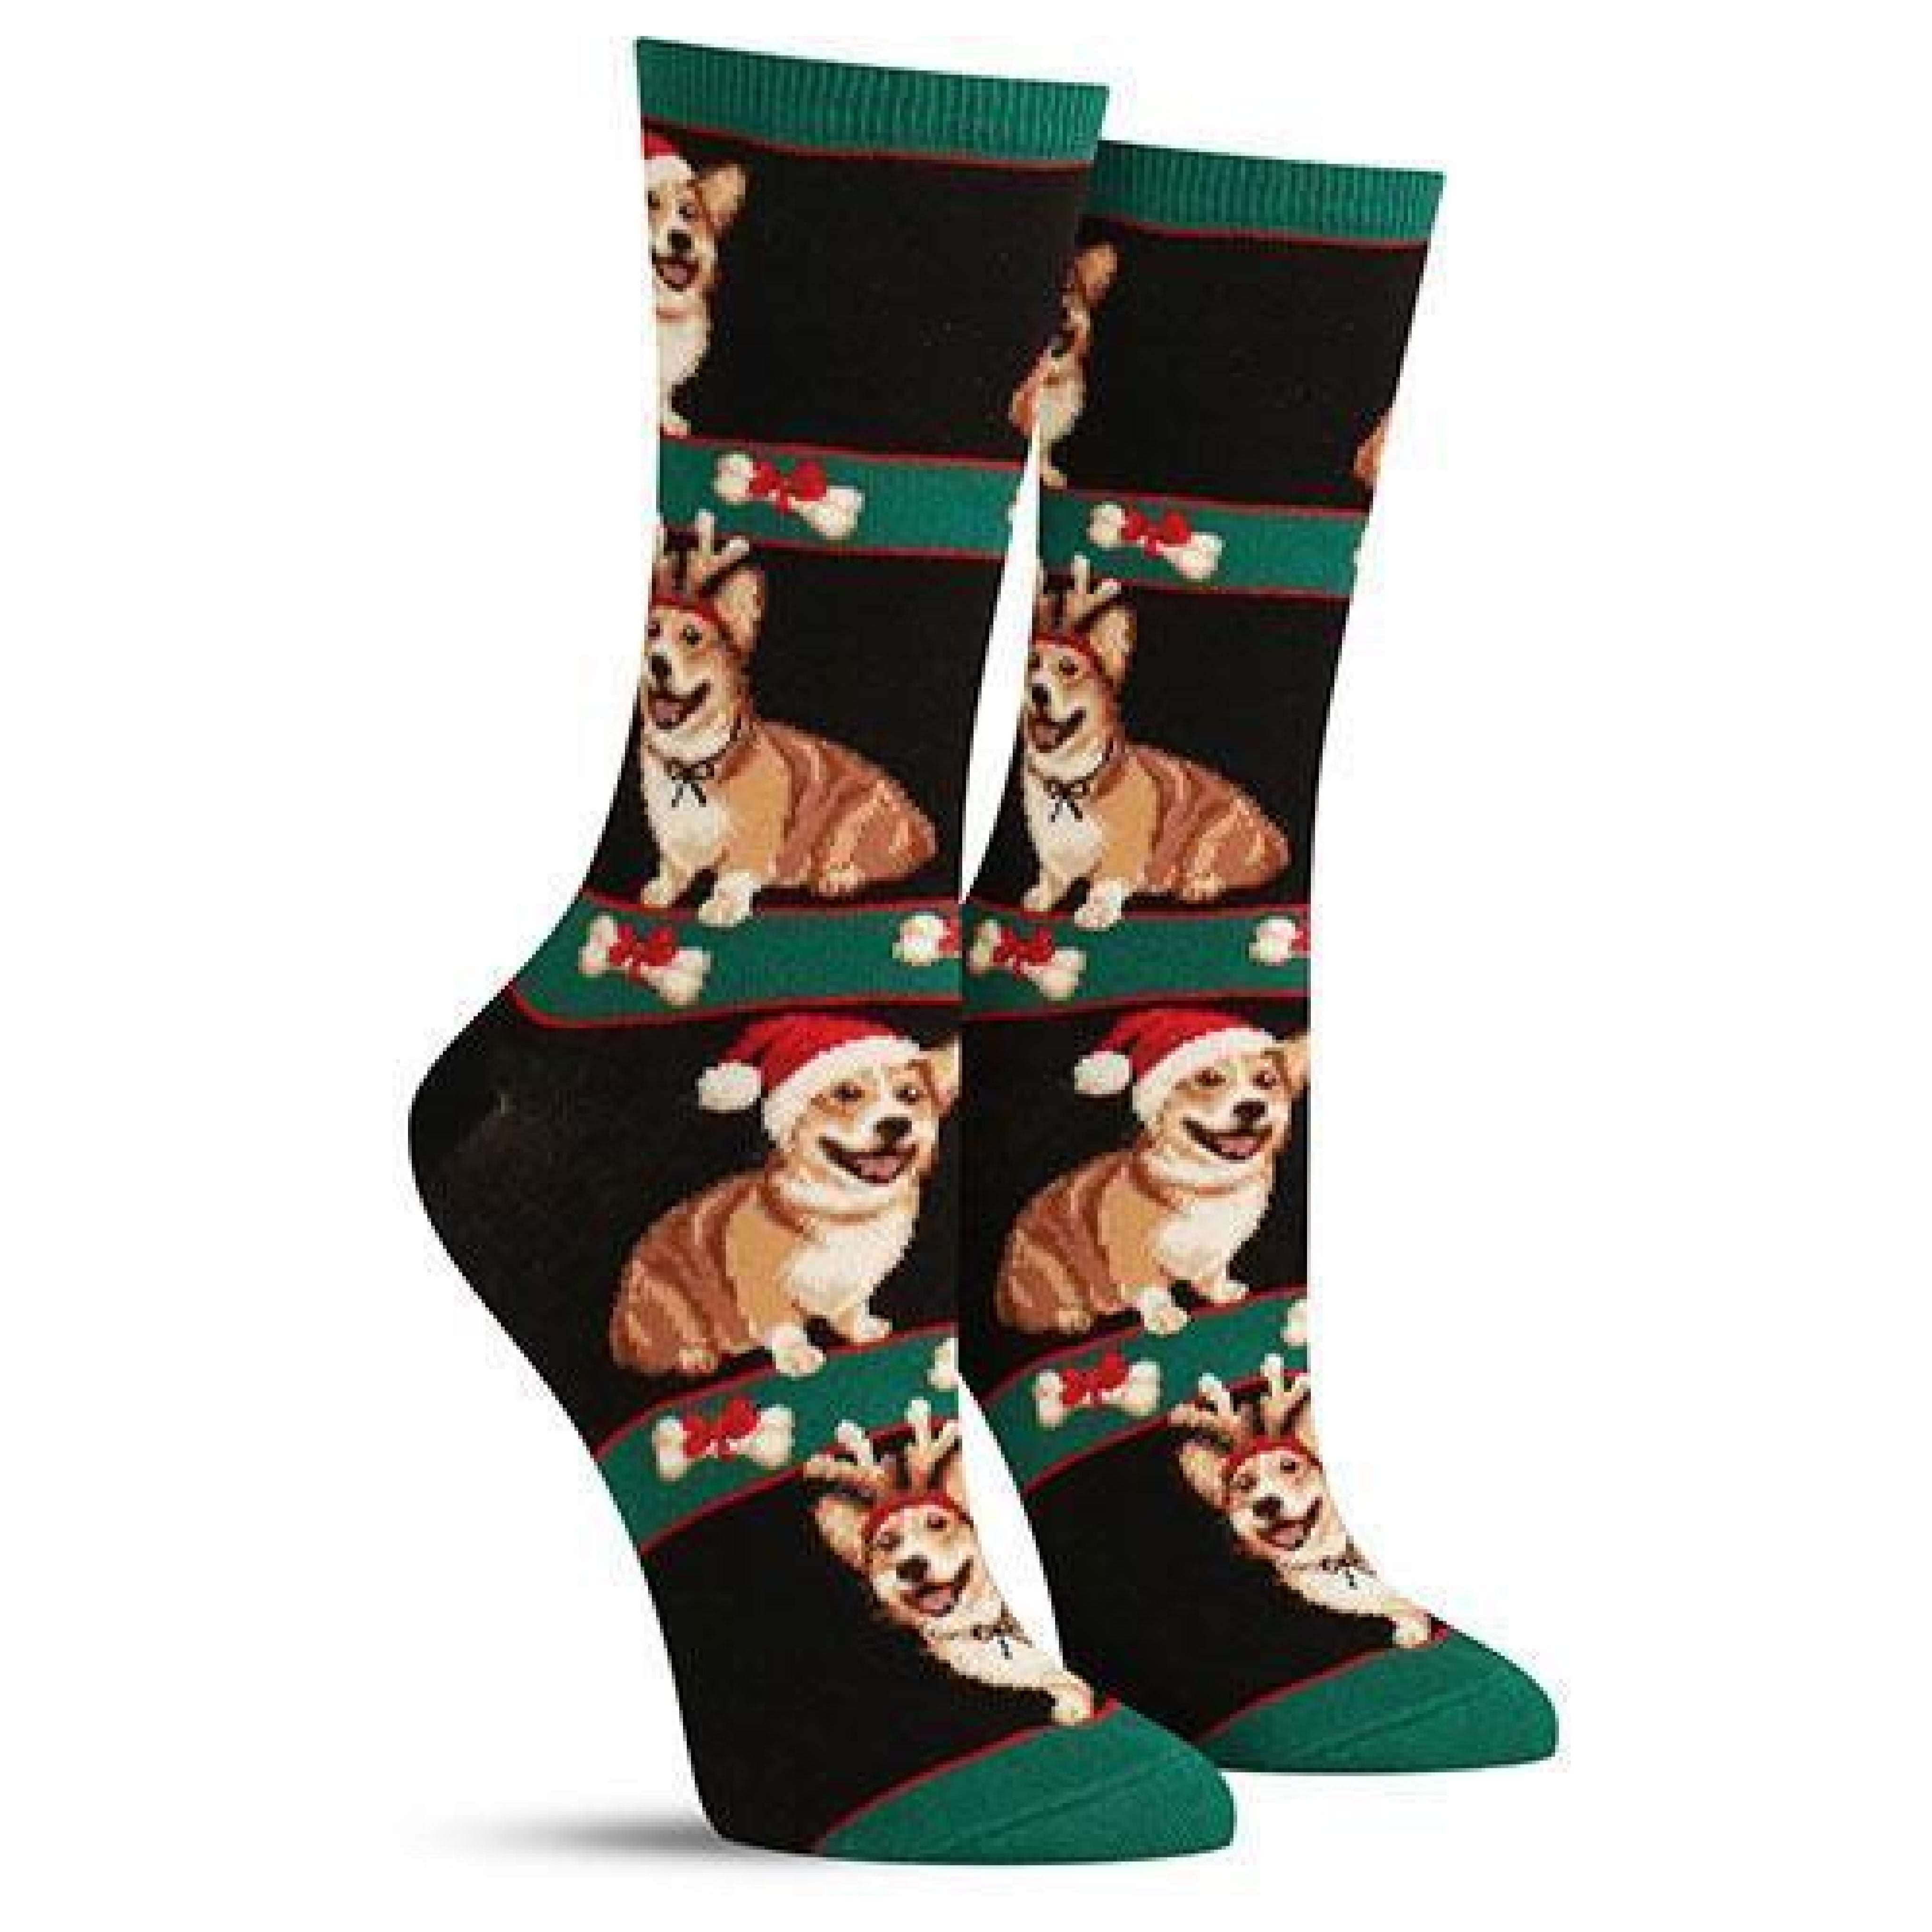 Corgi Christmas Socks (Adult Medium)